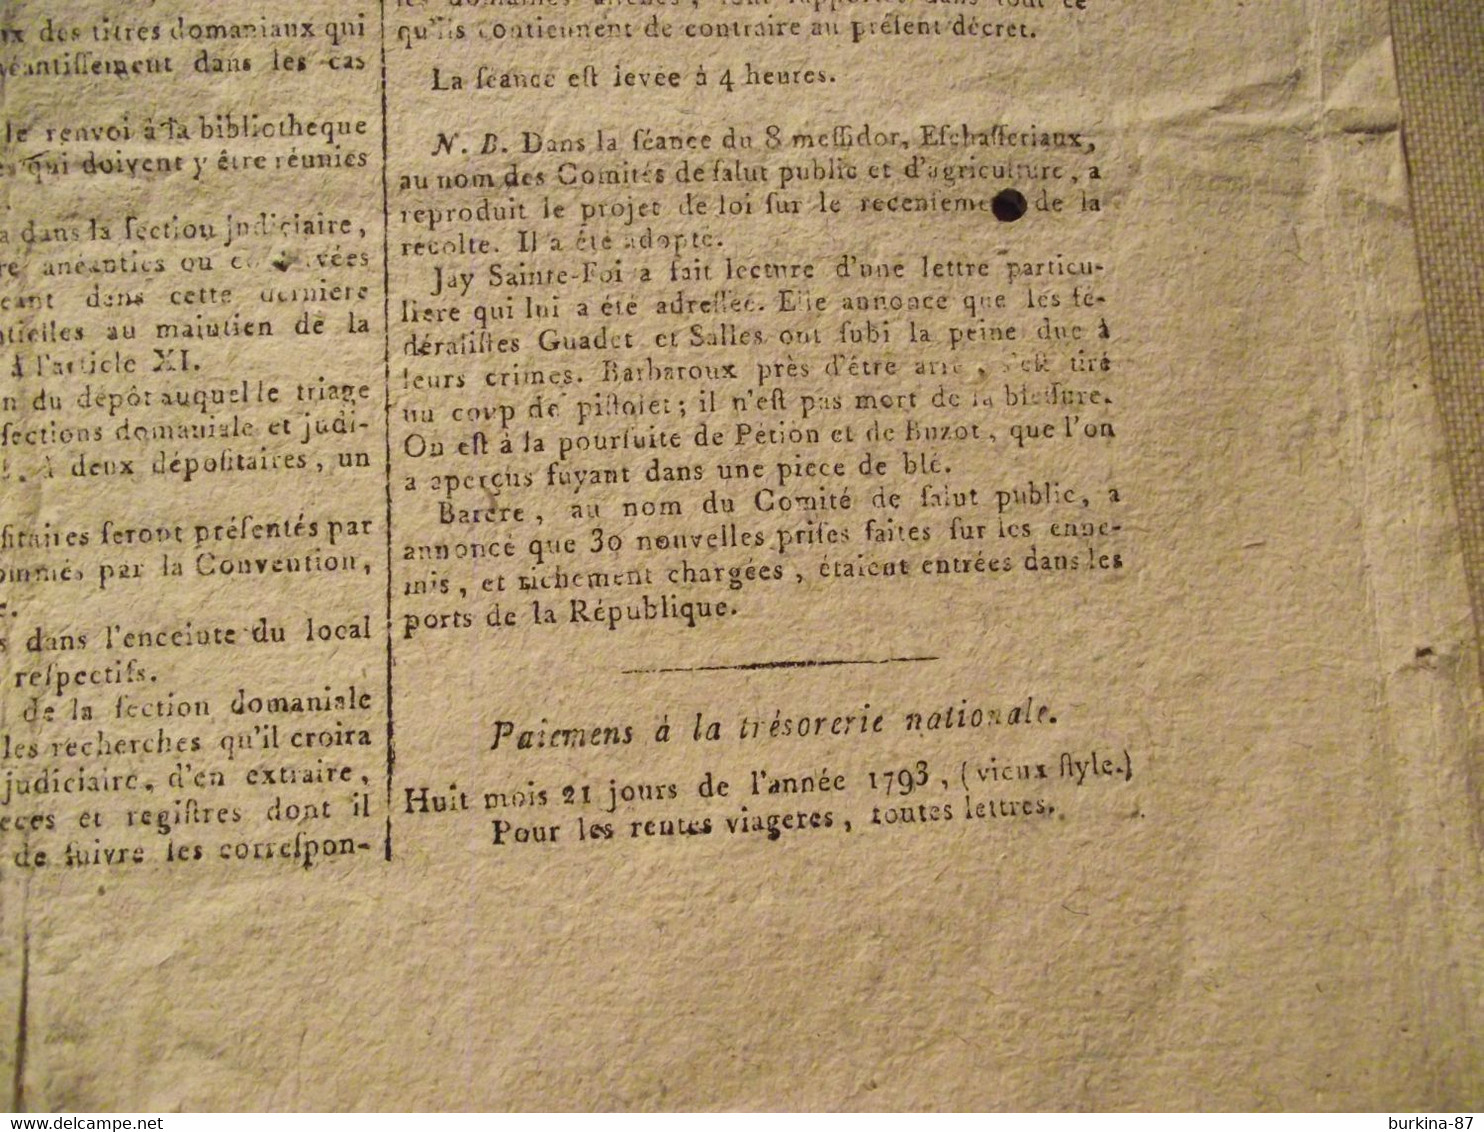 Gazette Nationale ou Le Moniteur Universel, 27 JUIN 1794, convention nationale, journal officiel, 9 messidor an 2